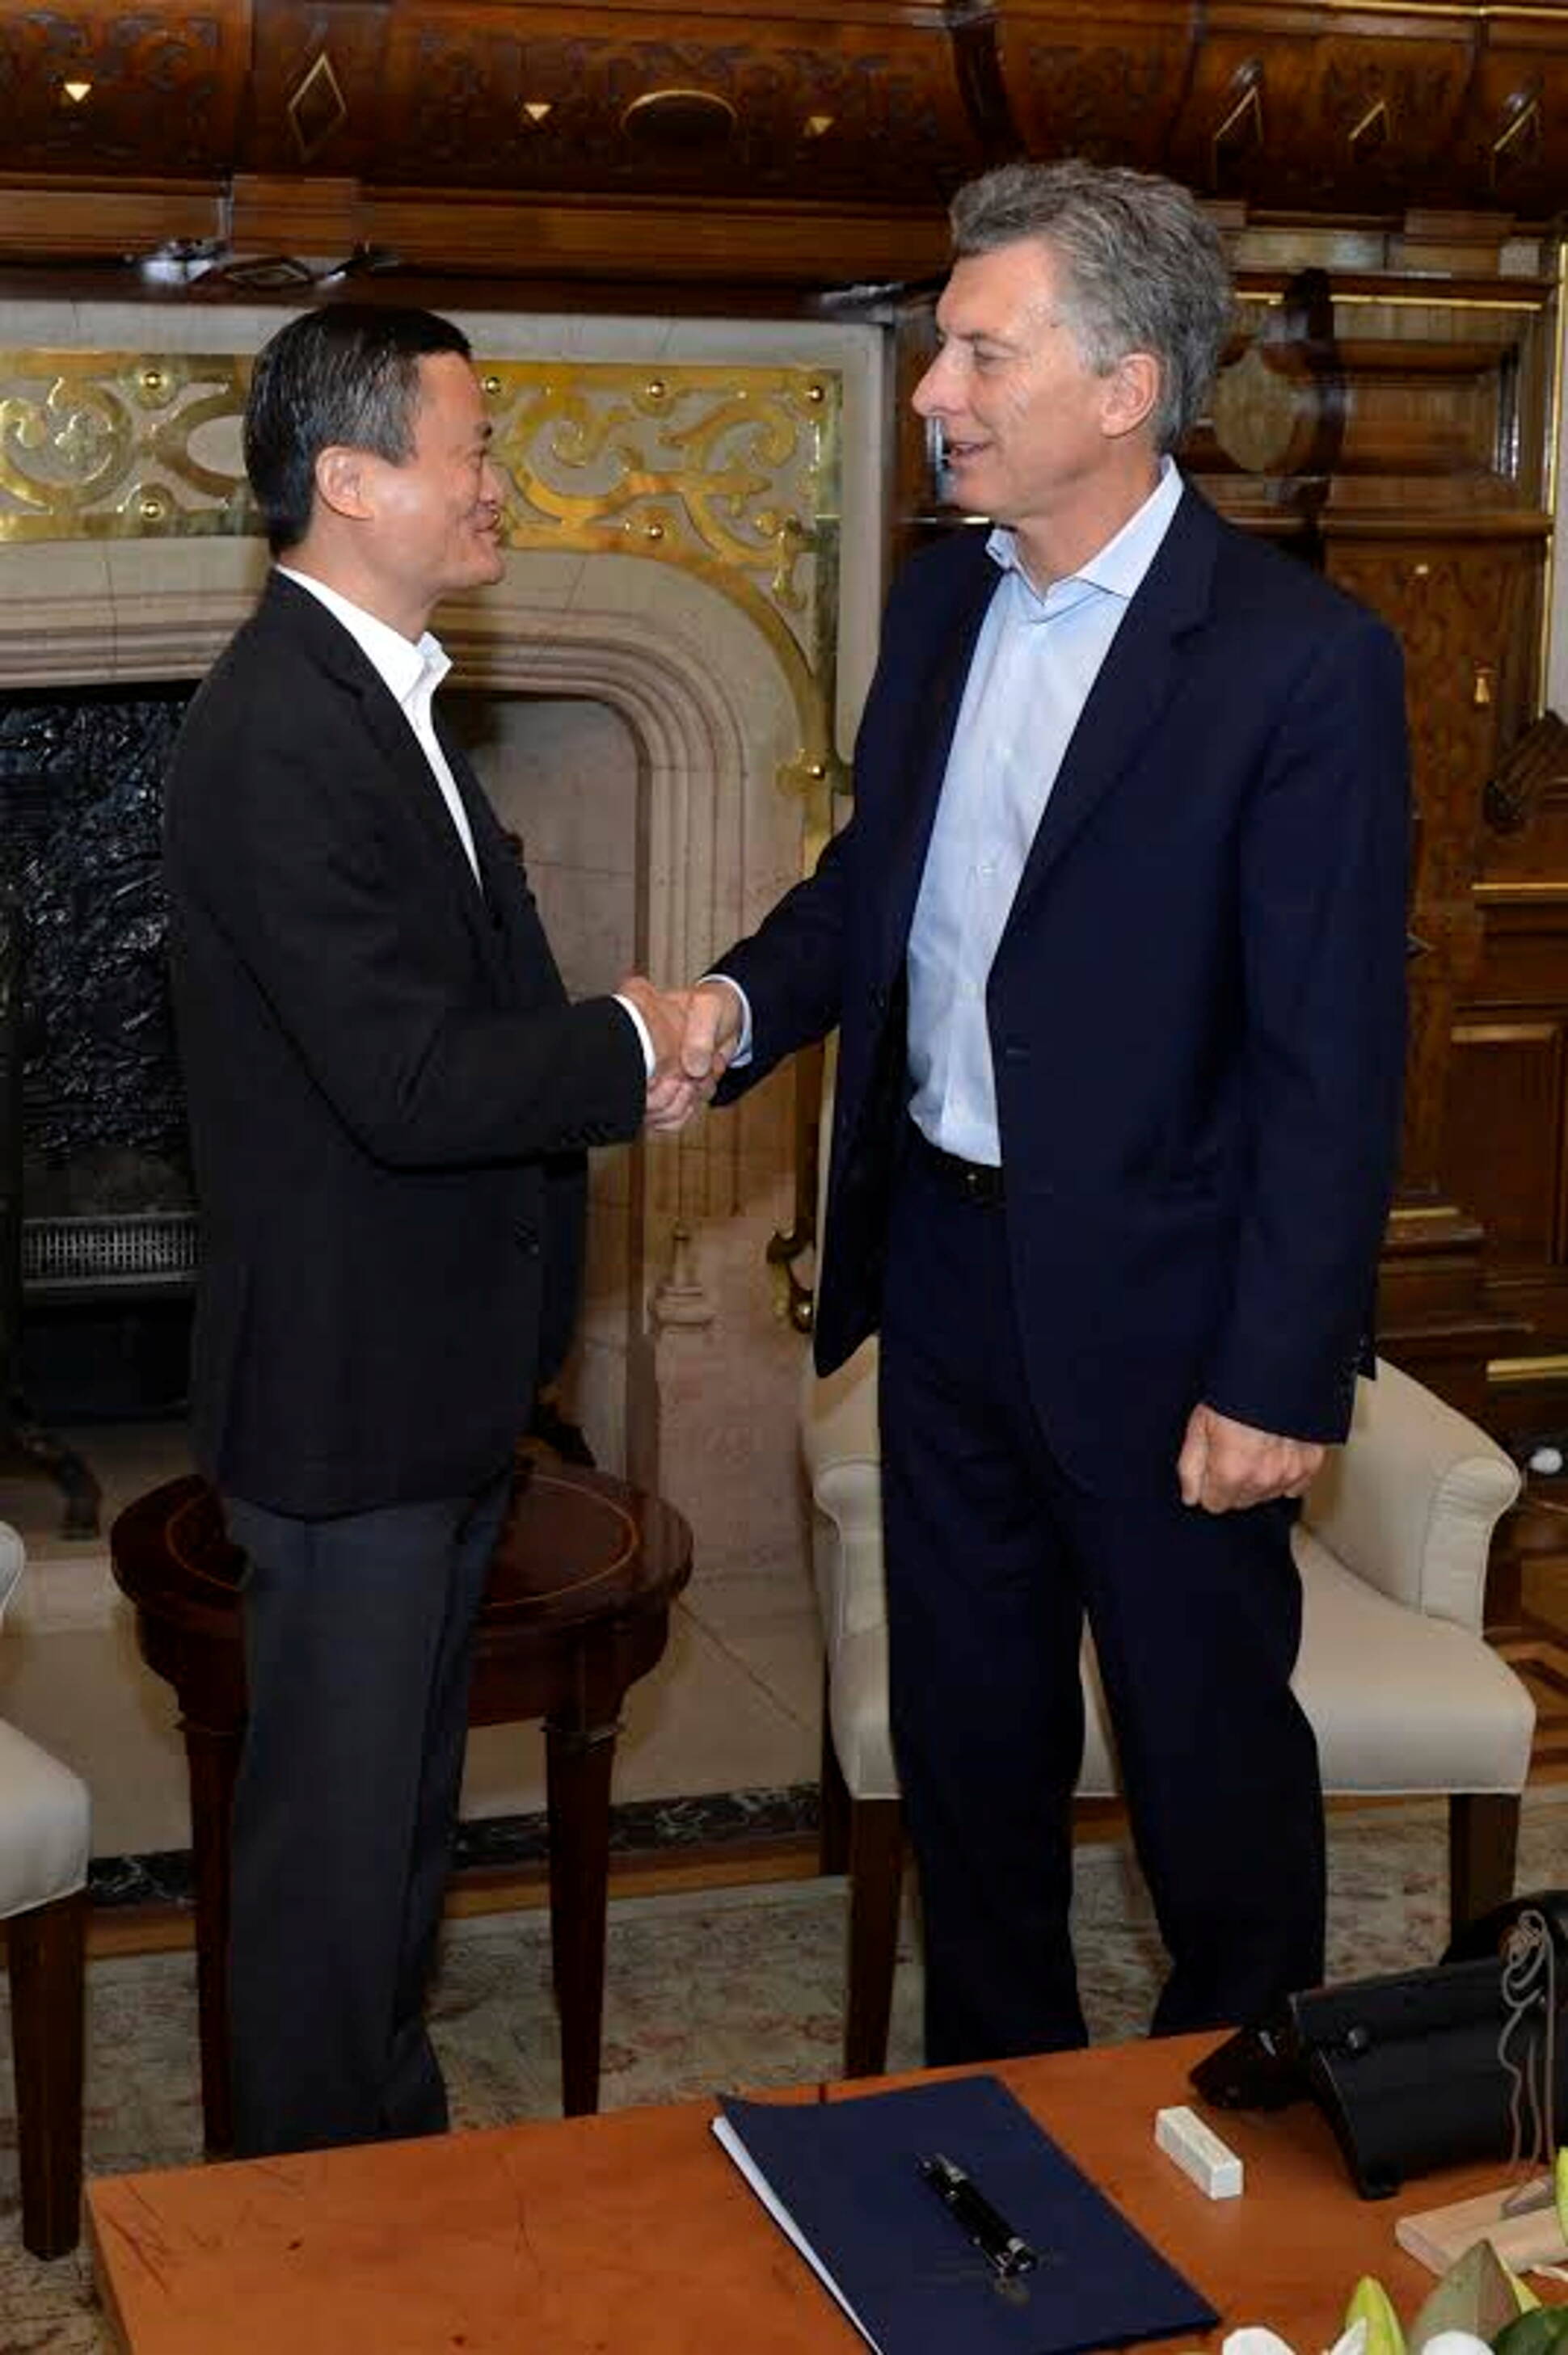 Macri recibió al empresario chino Jack Ma, fundador y presidente de Alibaba